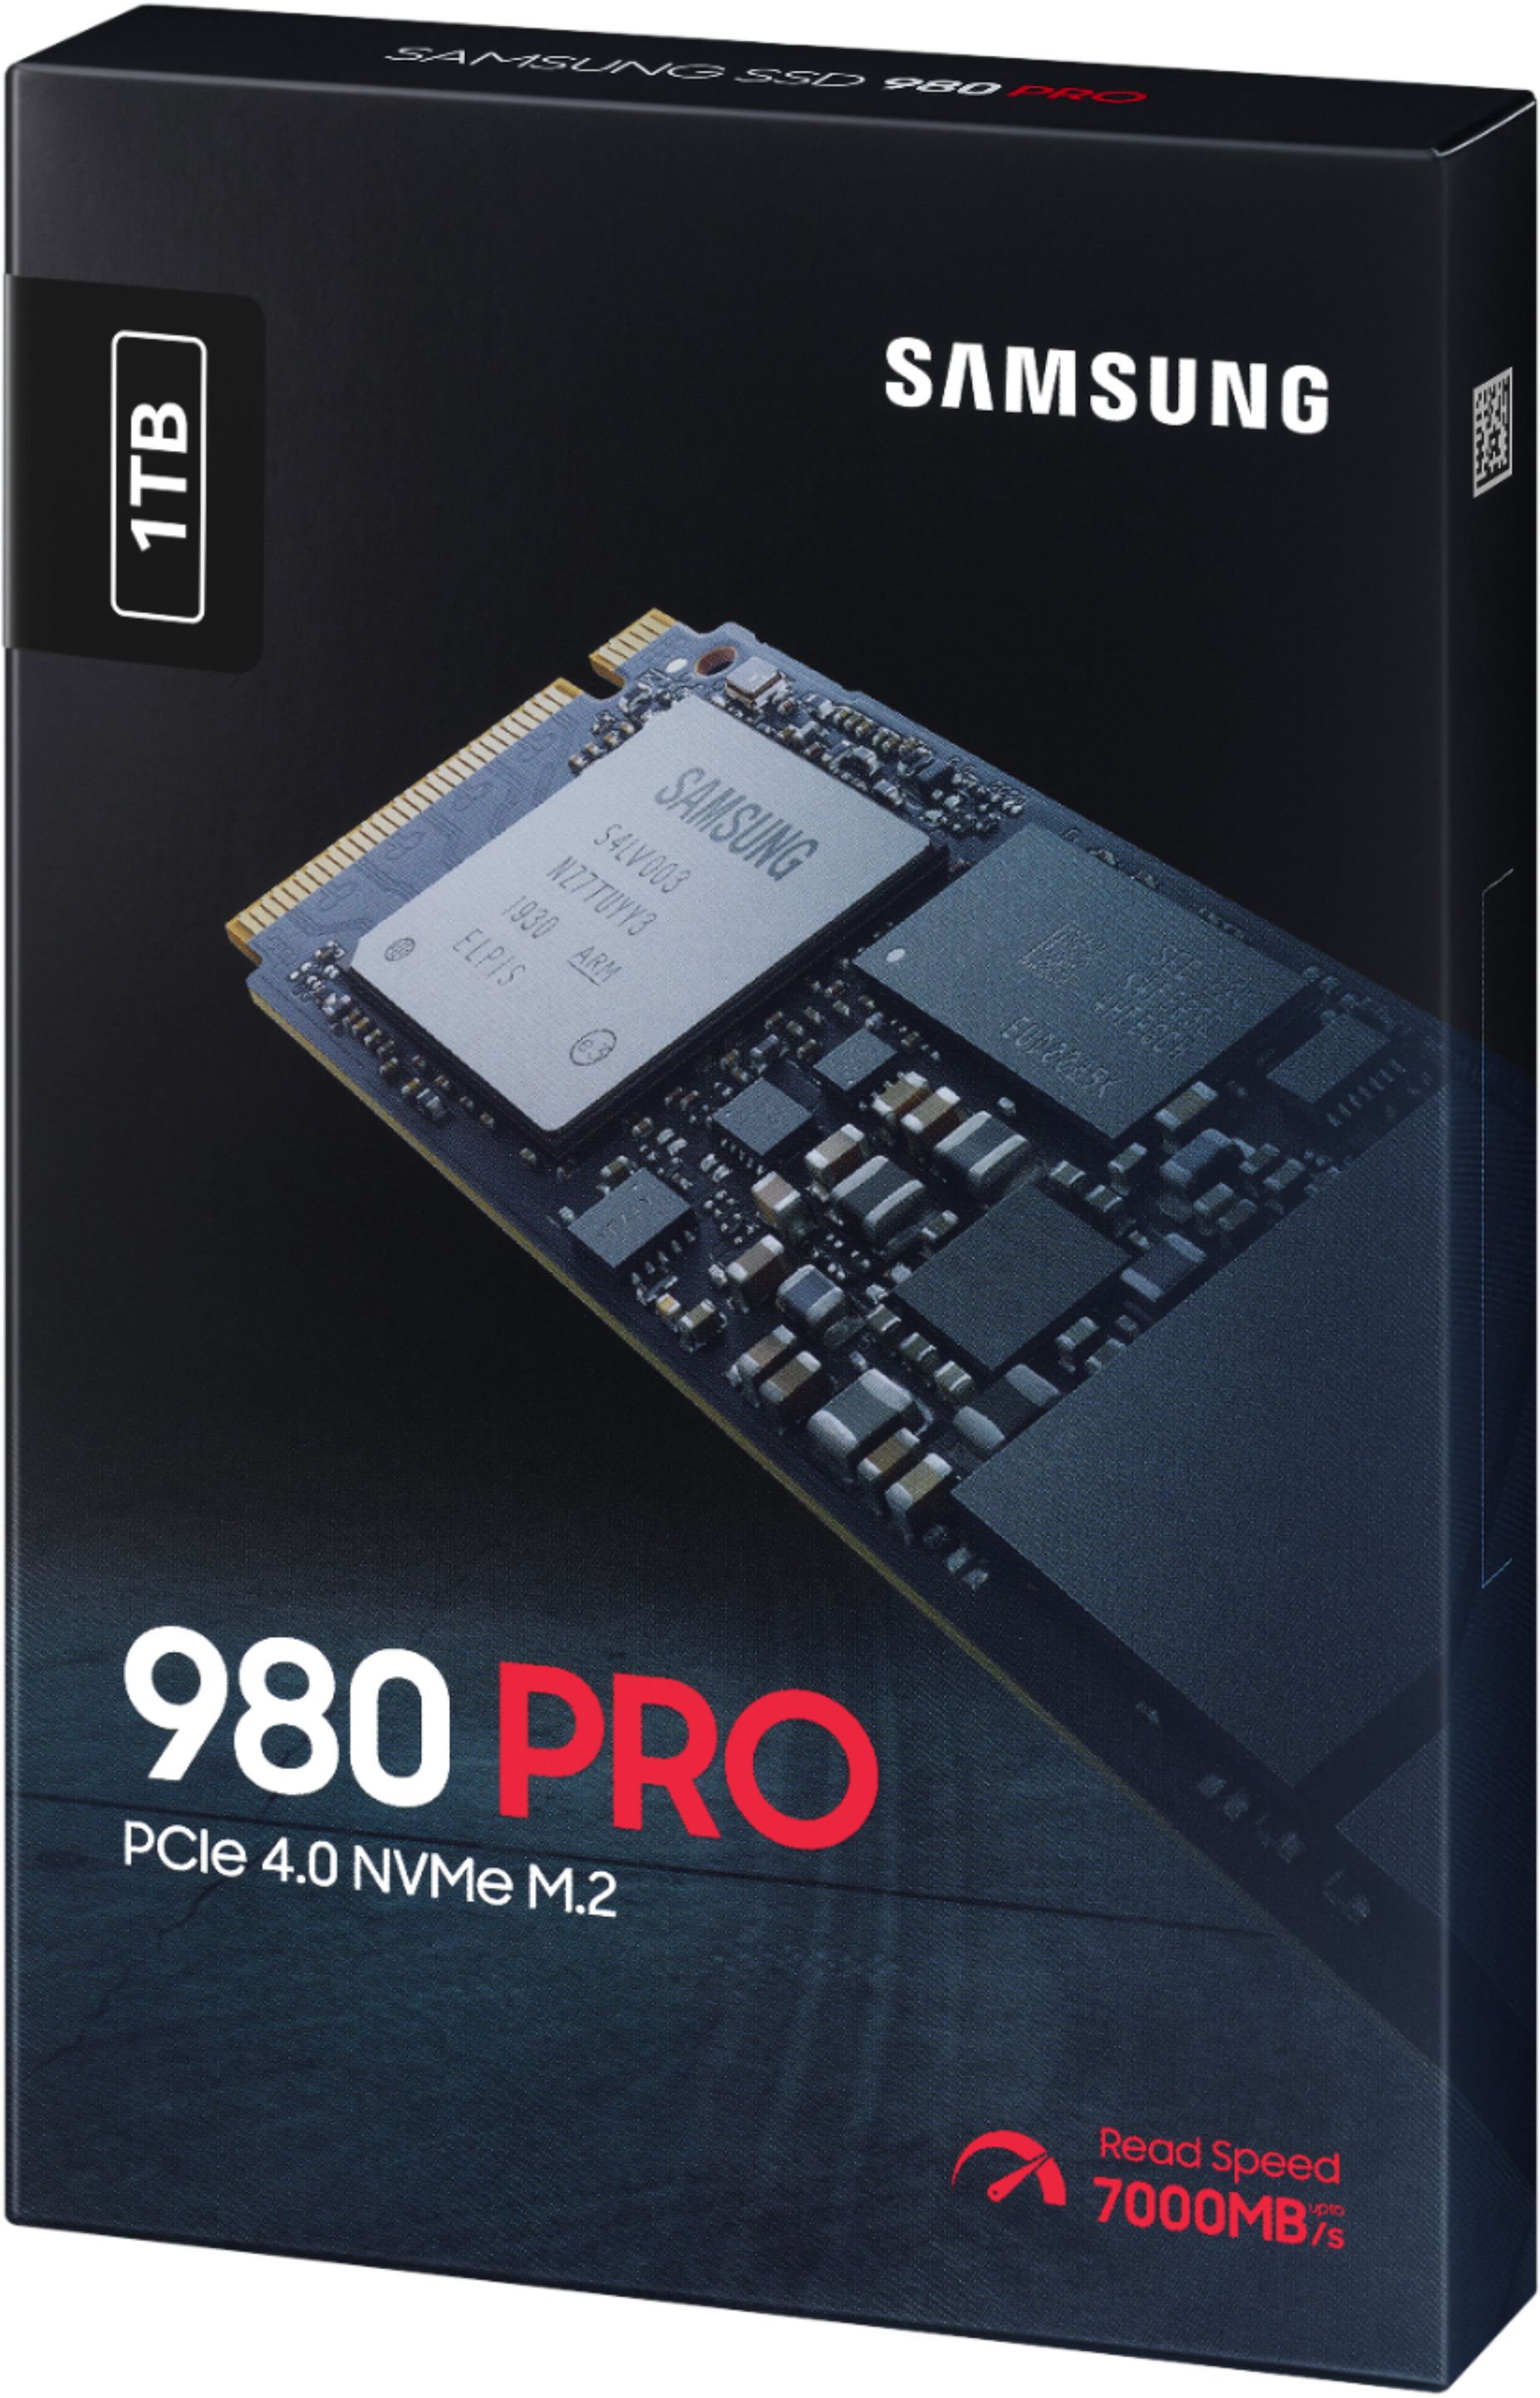 indkomst Skuldre på skuldrene Hej hej Samsung 980 PRO 1TB Internal Gaming SSD PCIe Gen 4 x4 NVMe MZ-V8P1T0B/AM -  Best Buy